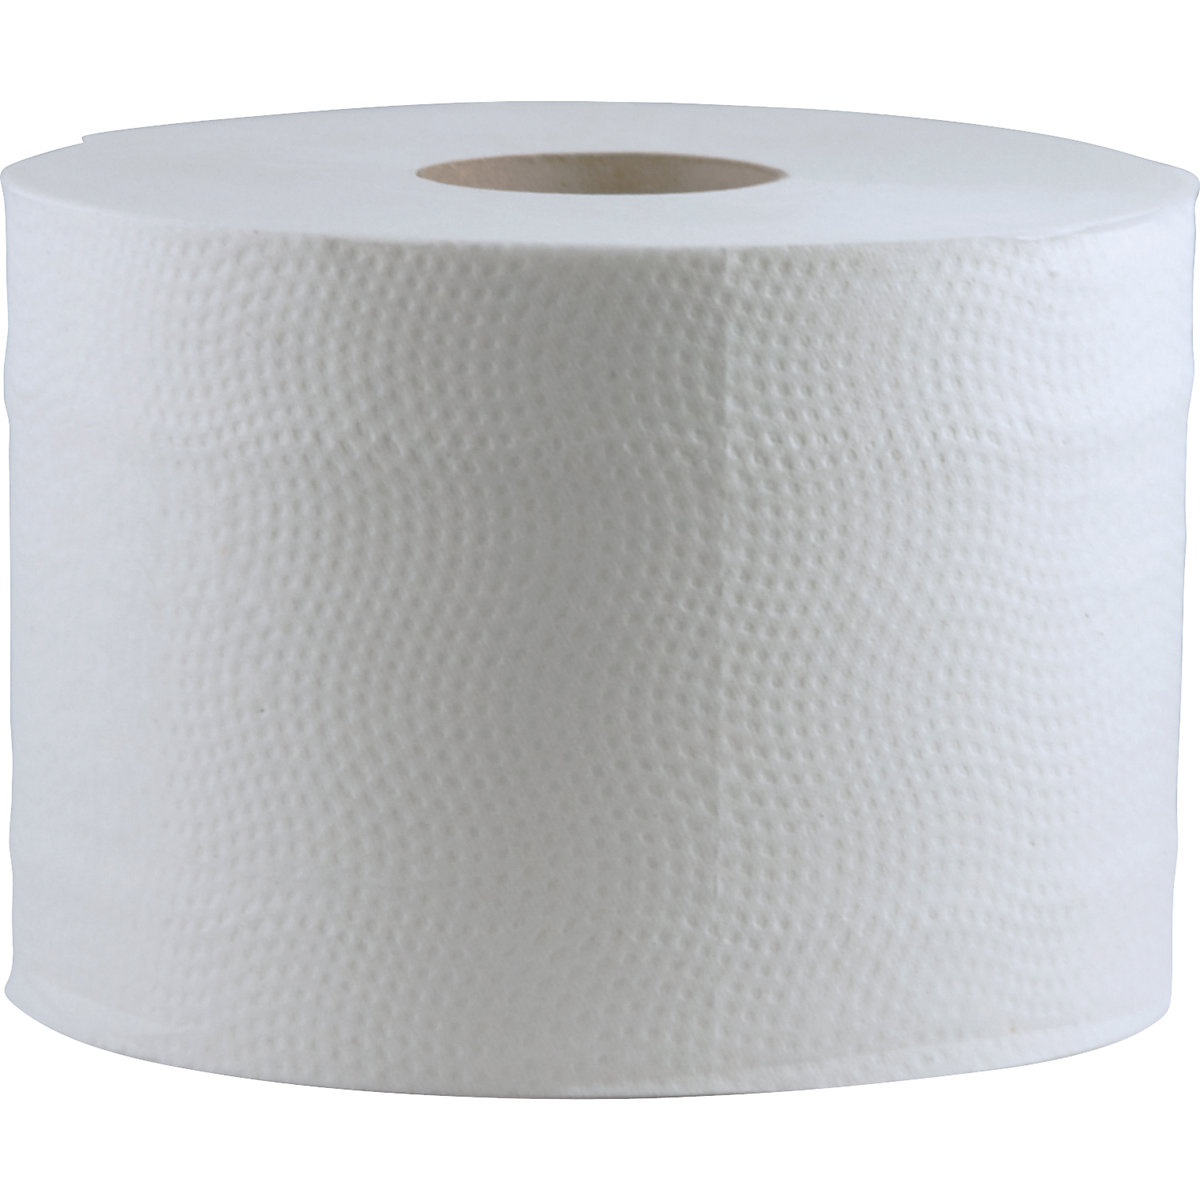 Toaletni papir – CWS